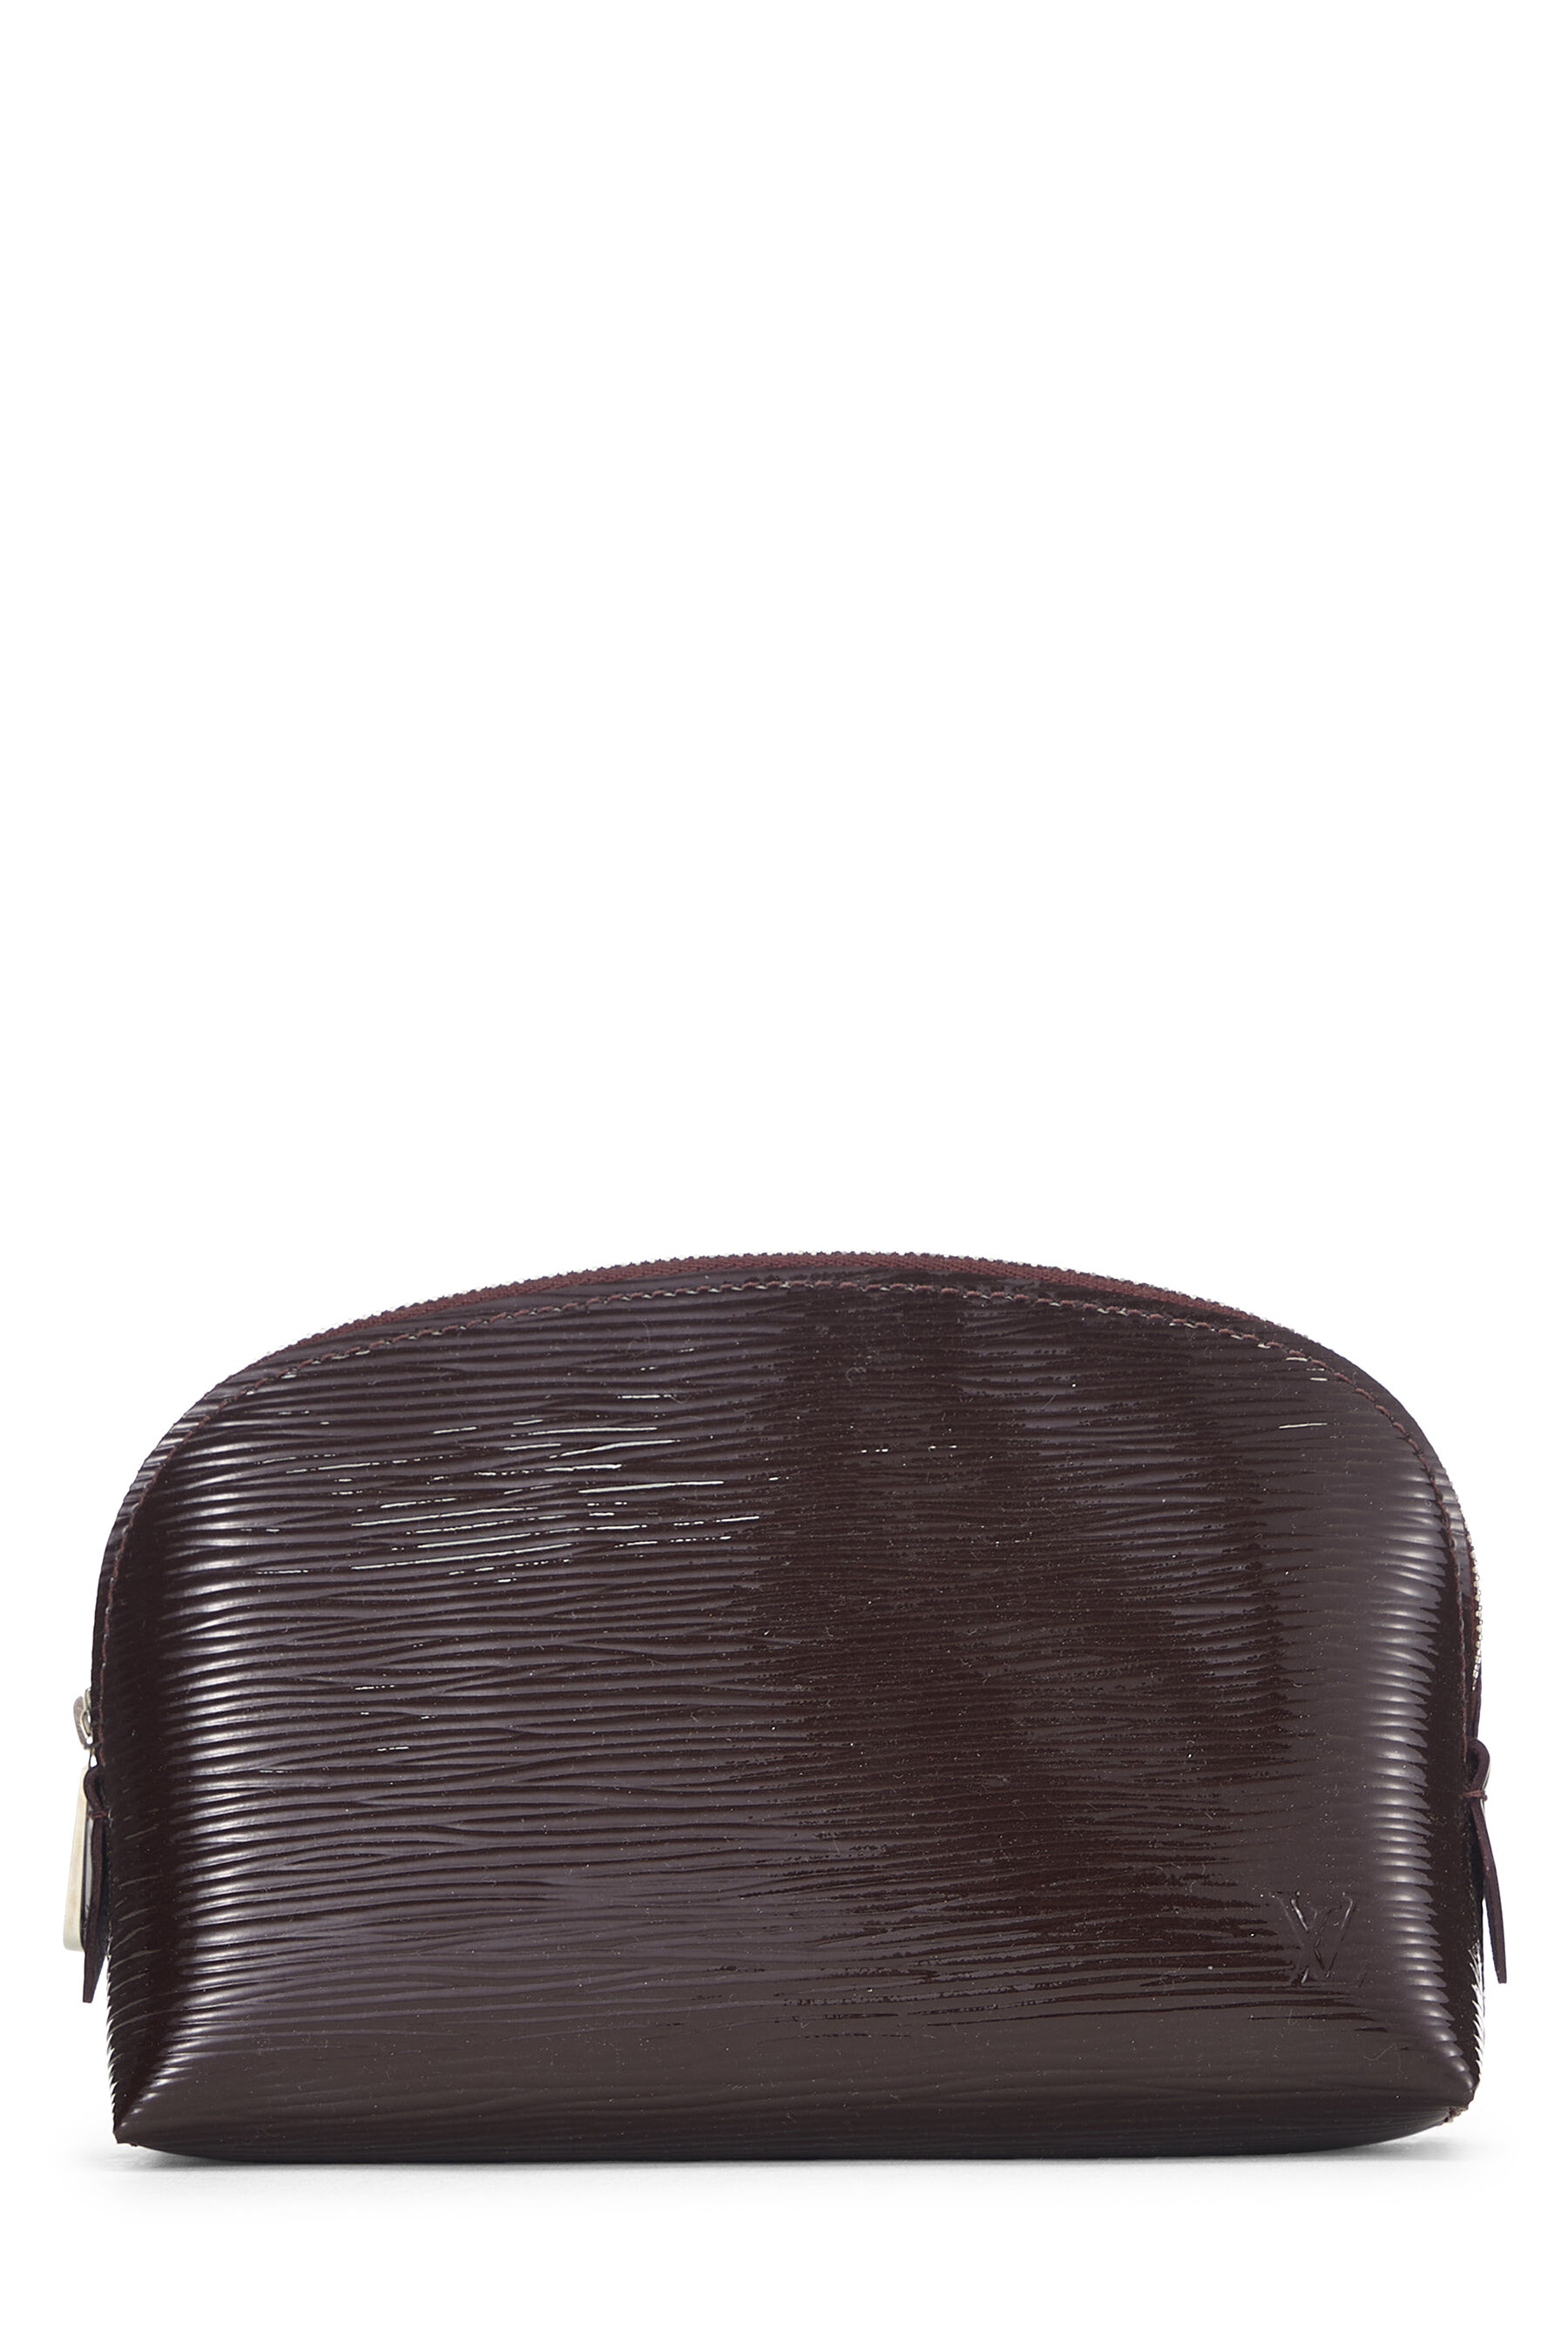 Louis Vuitton, Bags, Louis Vuitton Multi Color Noir Cosmetic Case